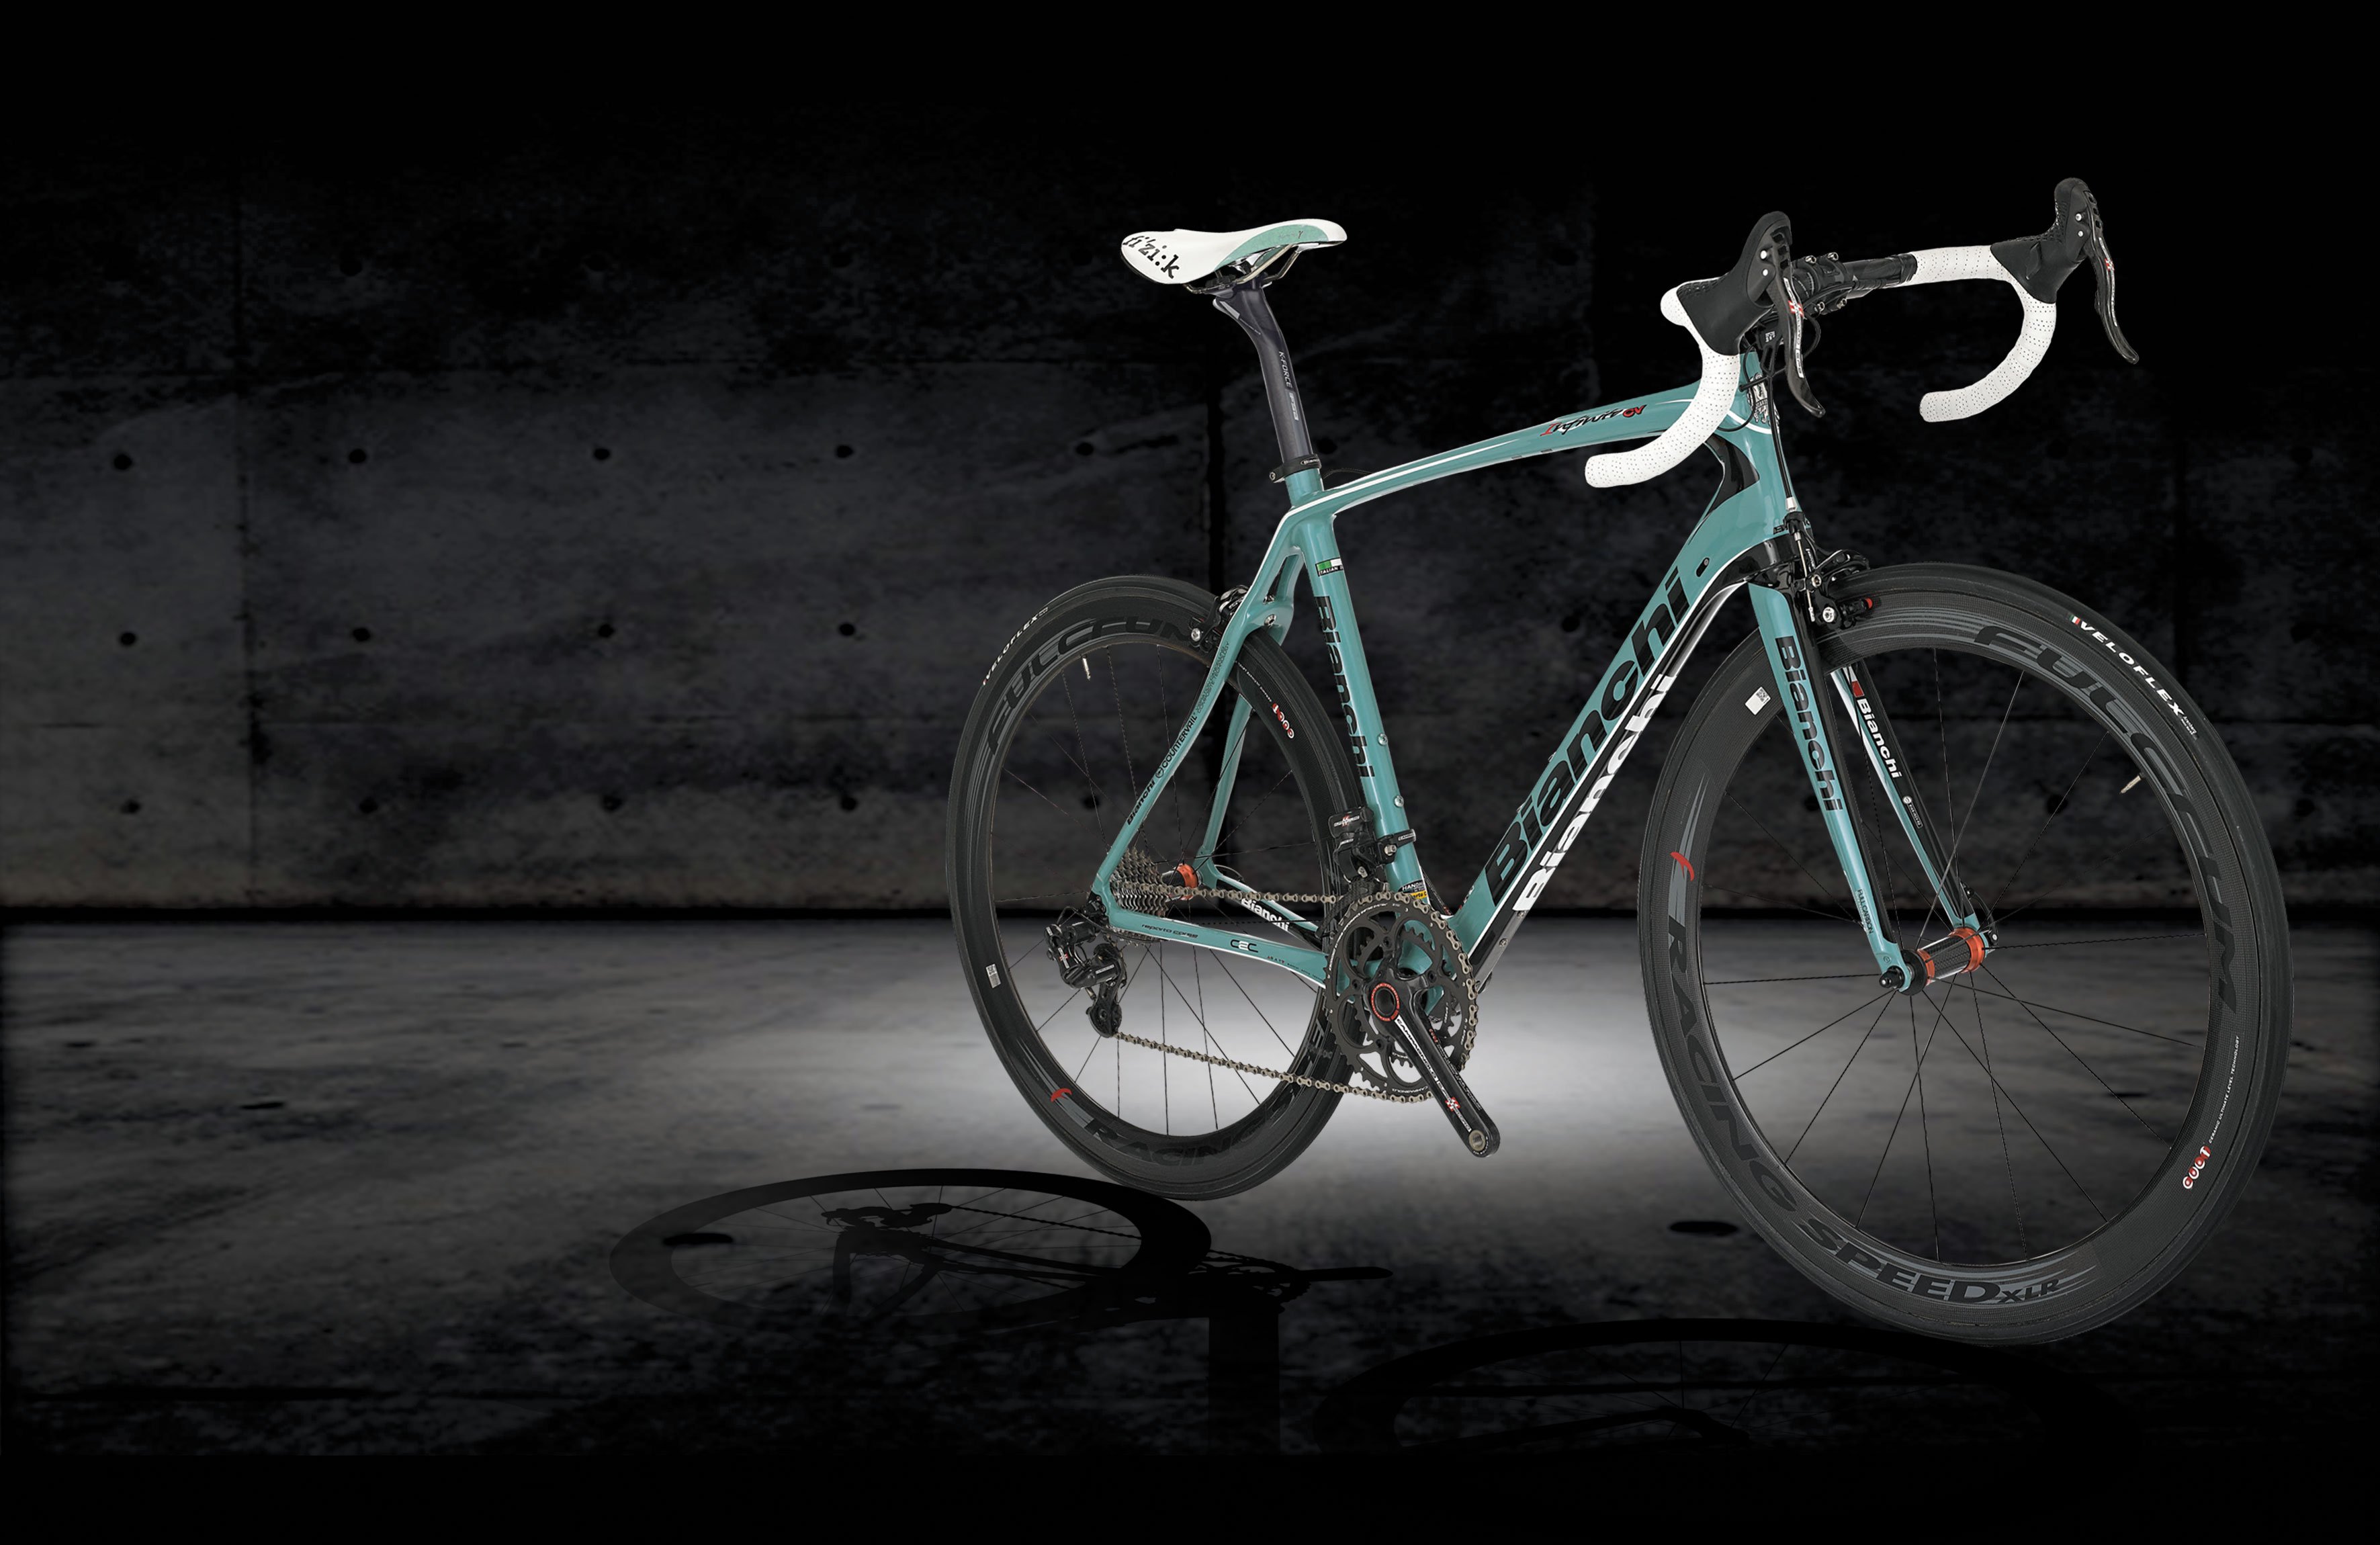 Bianchi Bicycle Bike Wallpaper - Bianchi Wallpaper Hd , HD Wallpaper & Backgrounds